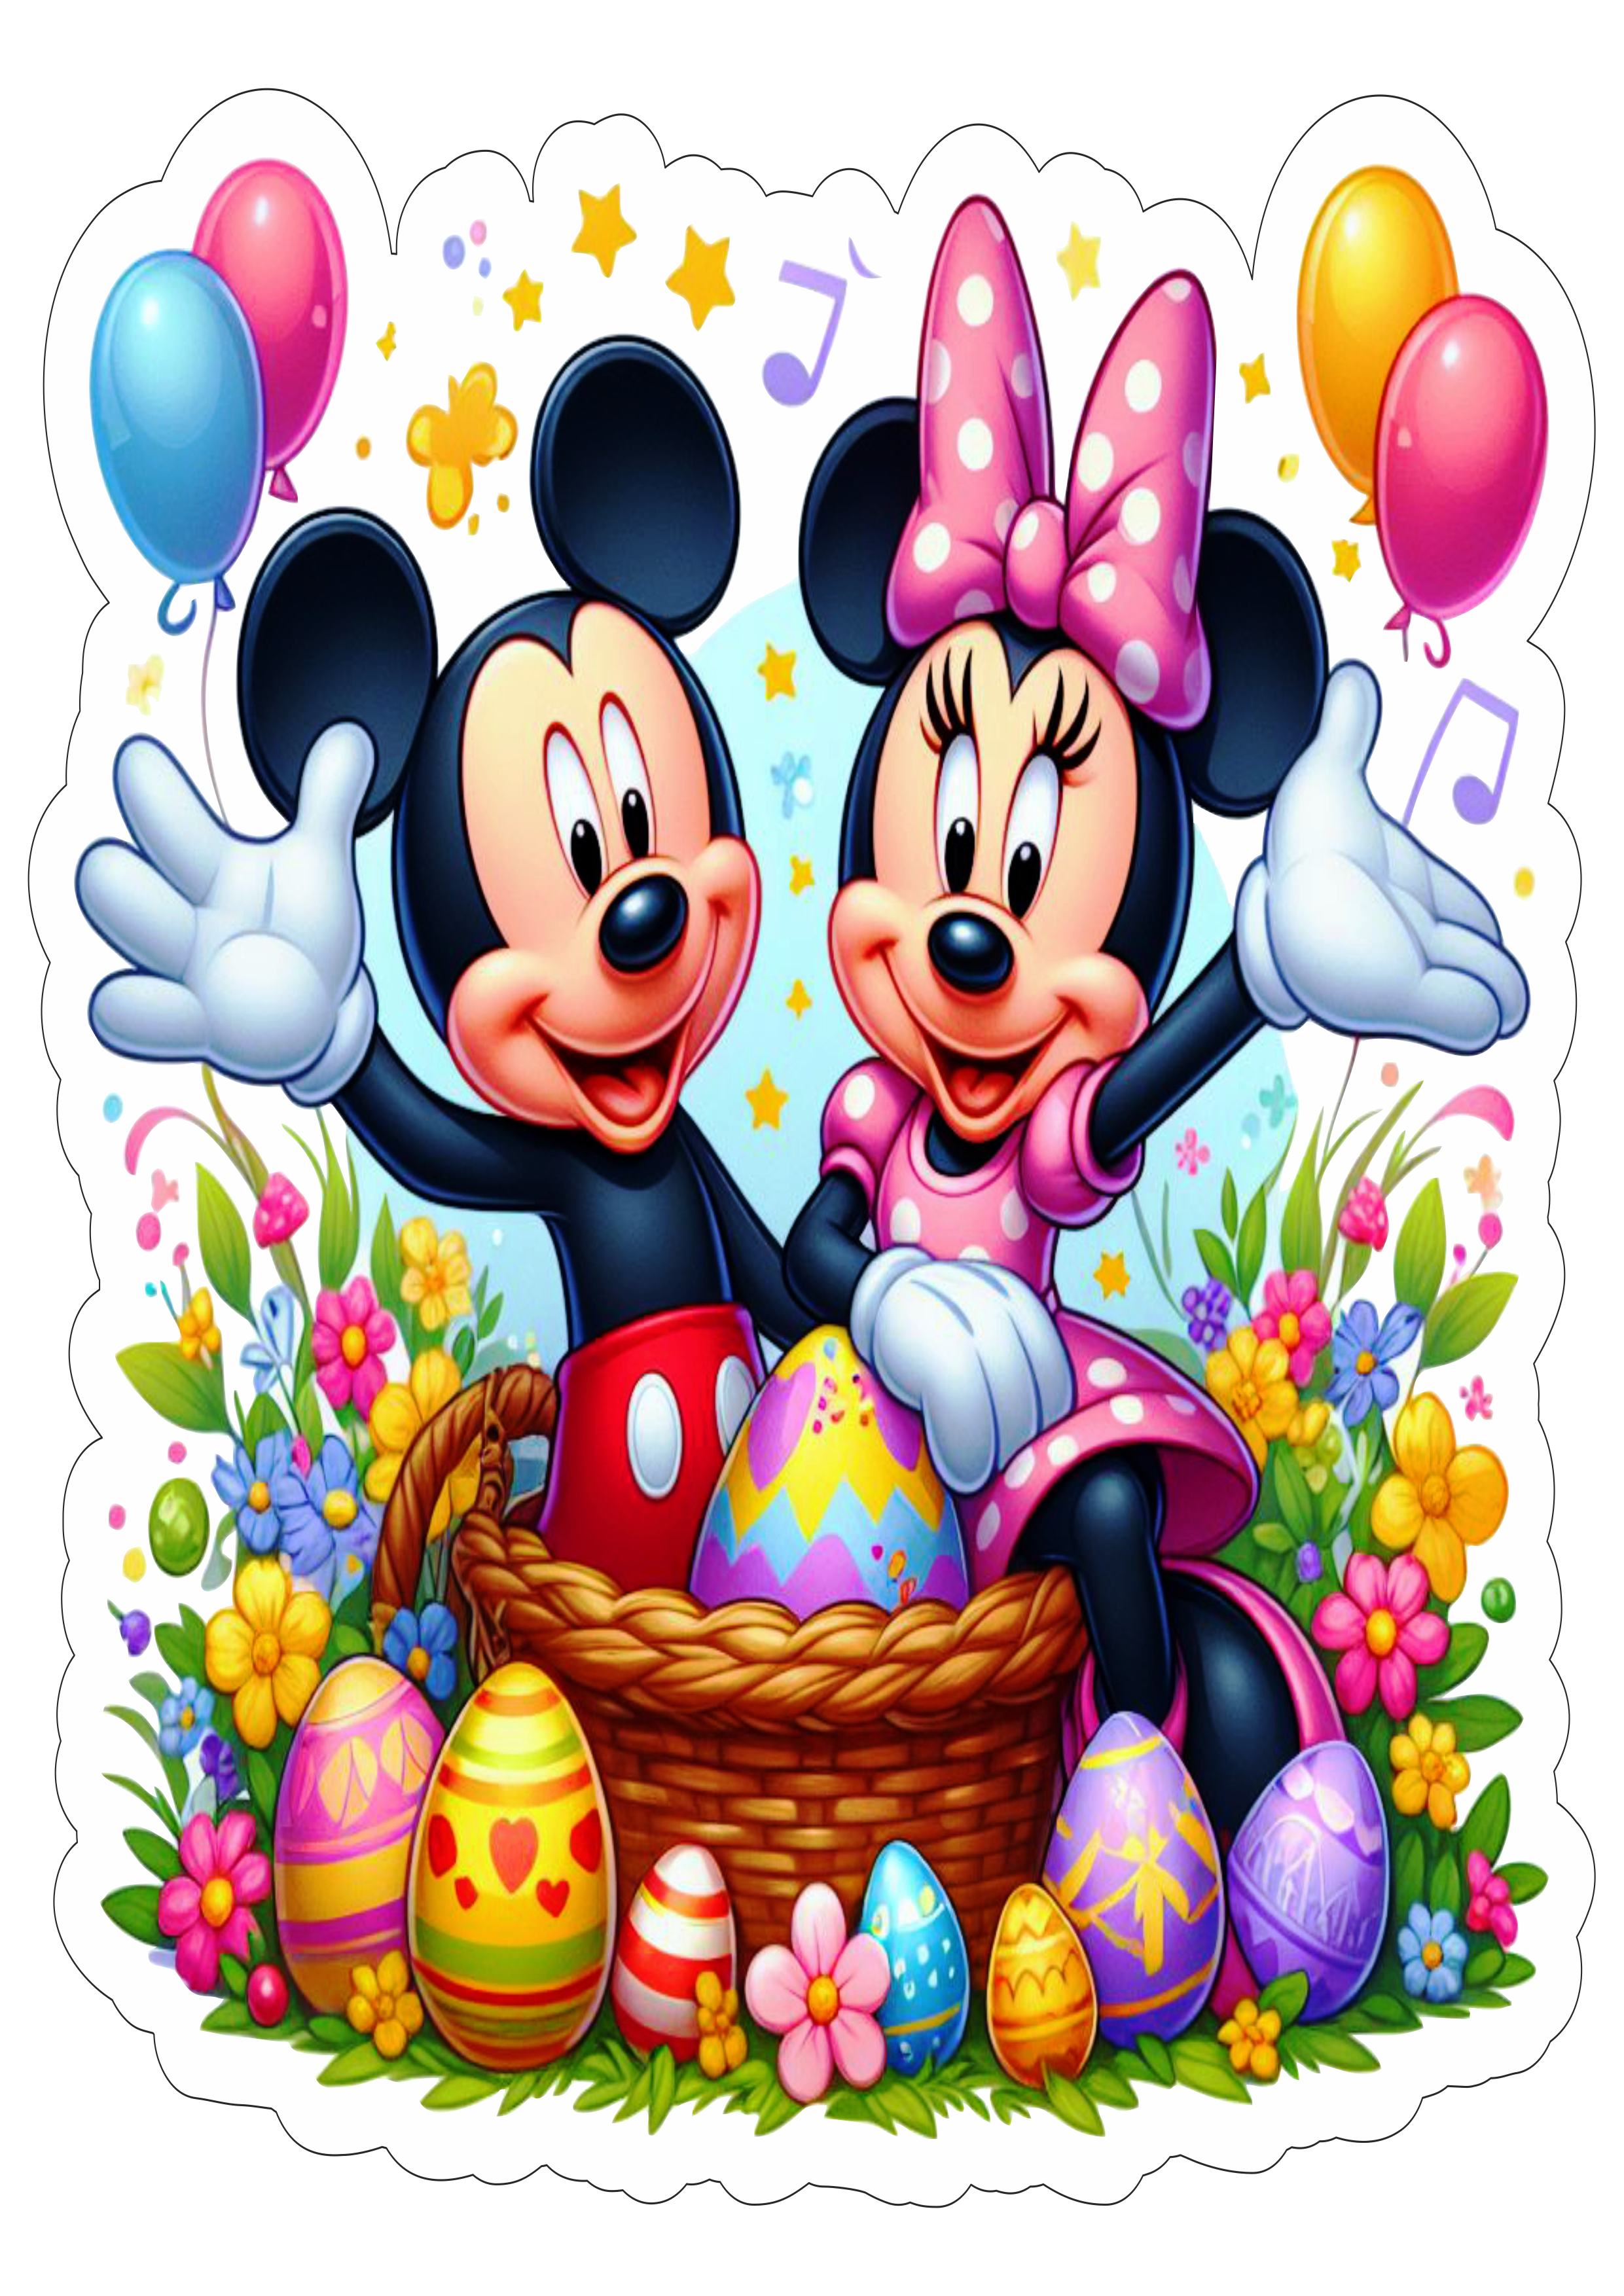 Mickey e Minnie especial de páscoa fundo transparente com contorno ilustração artes gráficas desenho png